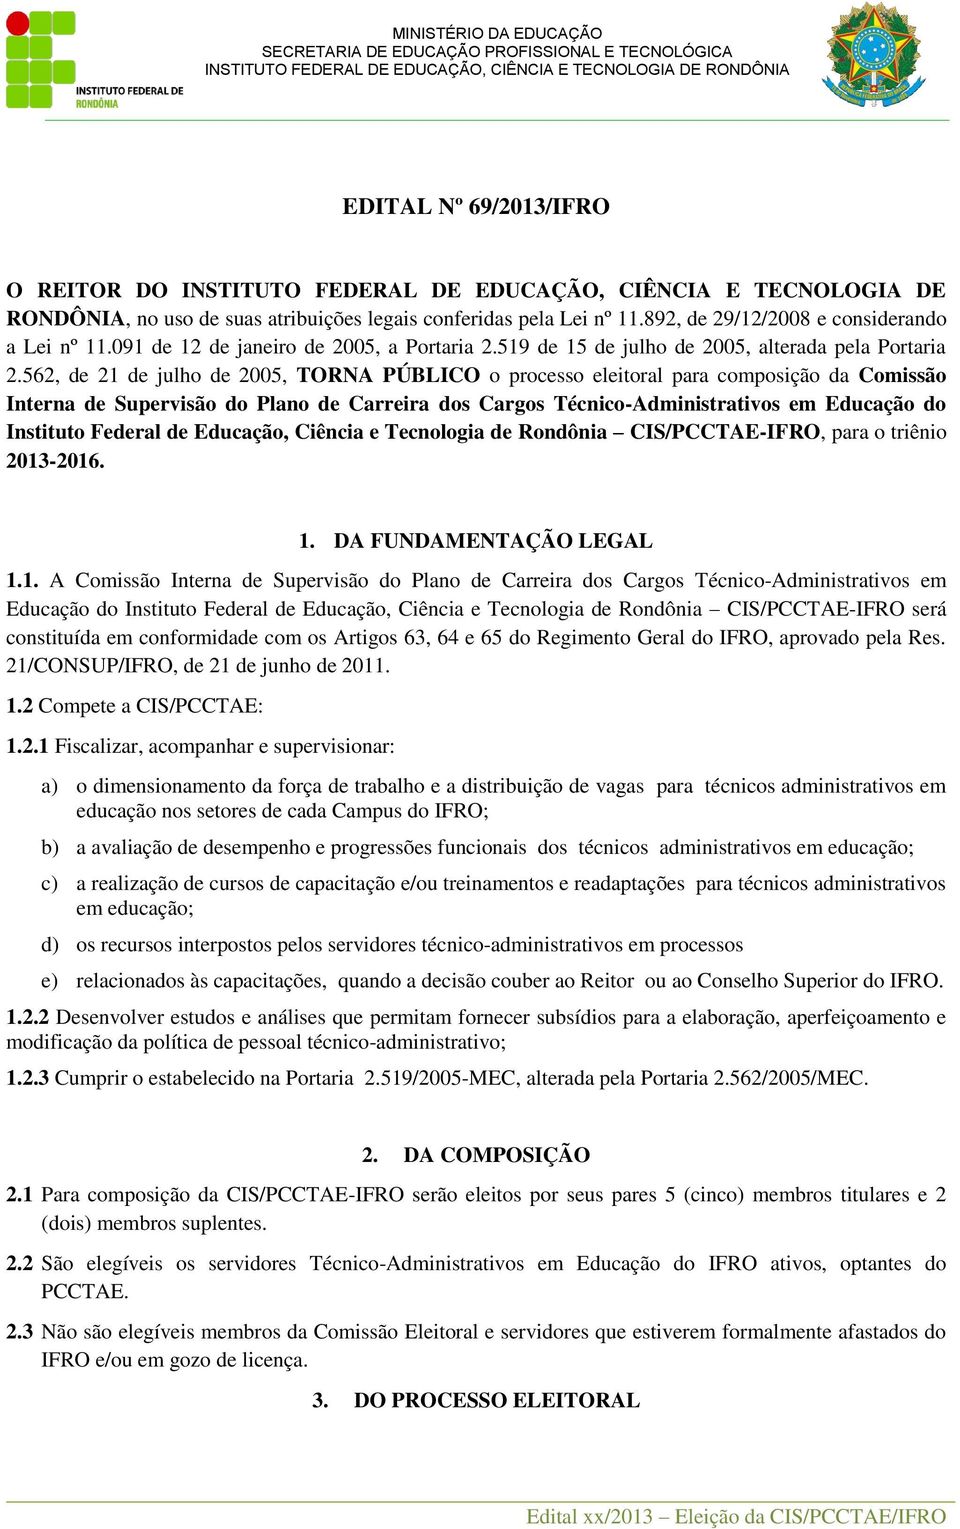 562, de 21 de julho de 2005, TORNA PÚBLICO o processo eleitoral para composição da Comissão Interna de Supervisão do Plano de Carreira dos Cargos Técnico-Administrativos em Educação do Instituto